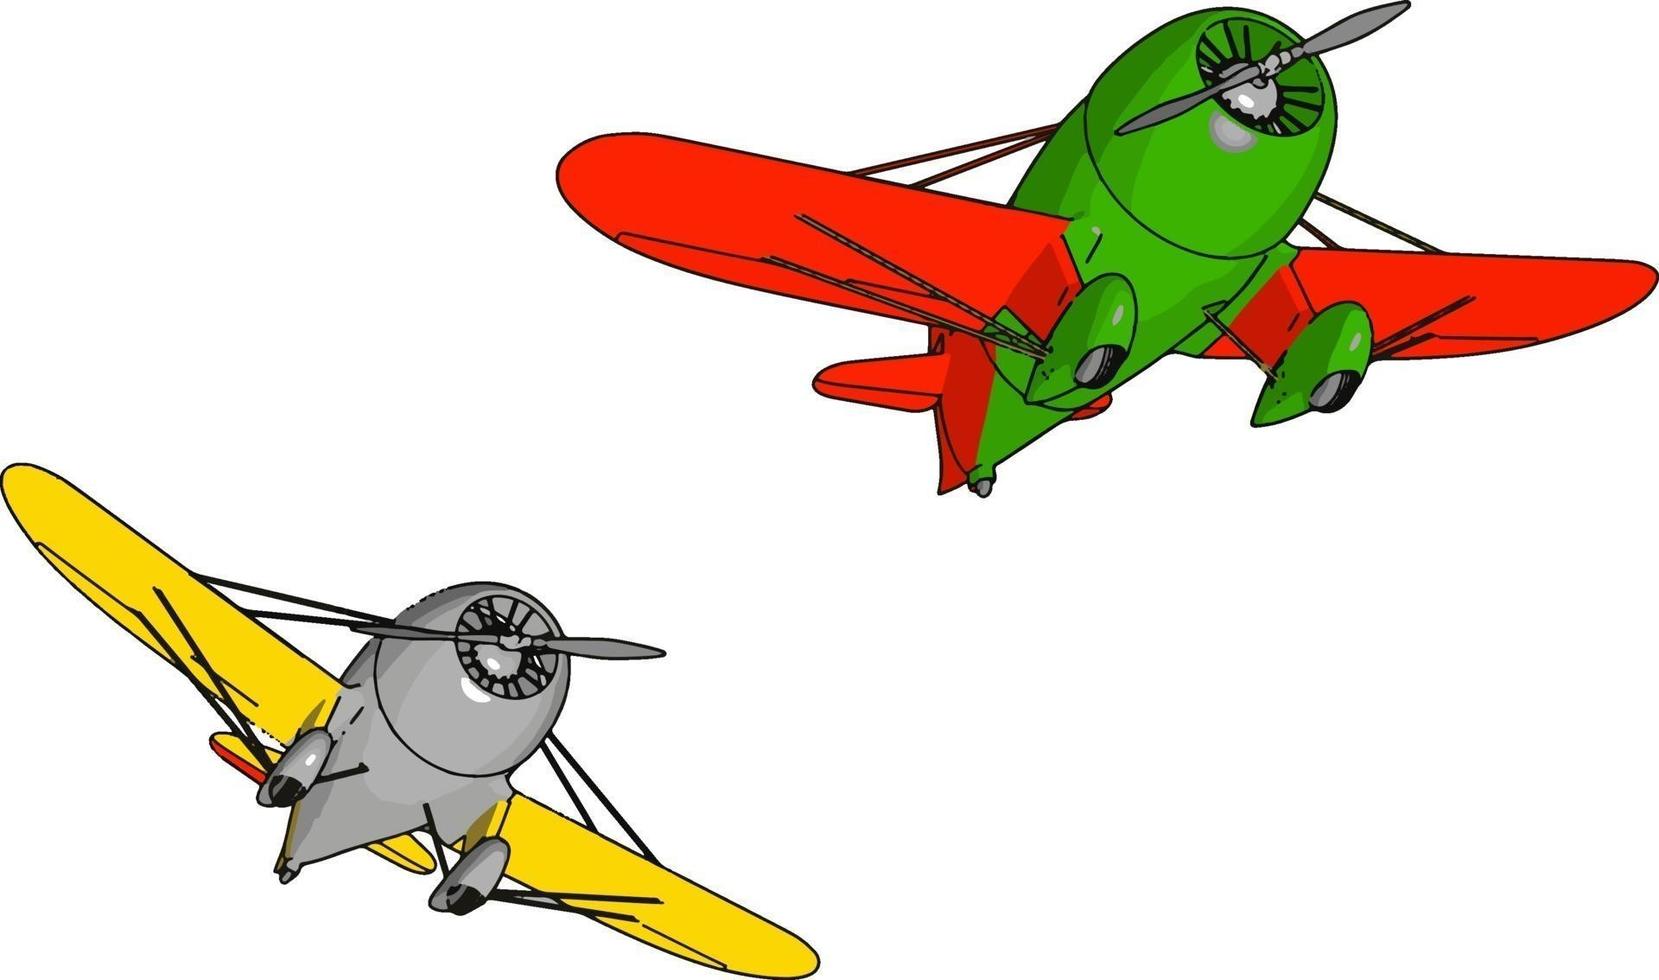 Zwei alte Retro-Flugzeuge, Illustration, Vektor auf weißem Hintergrund.